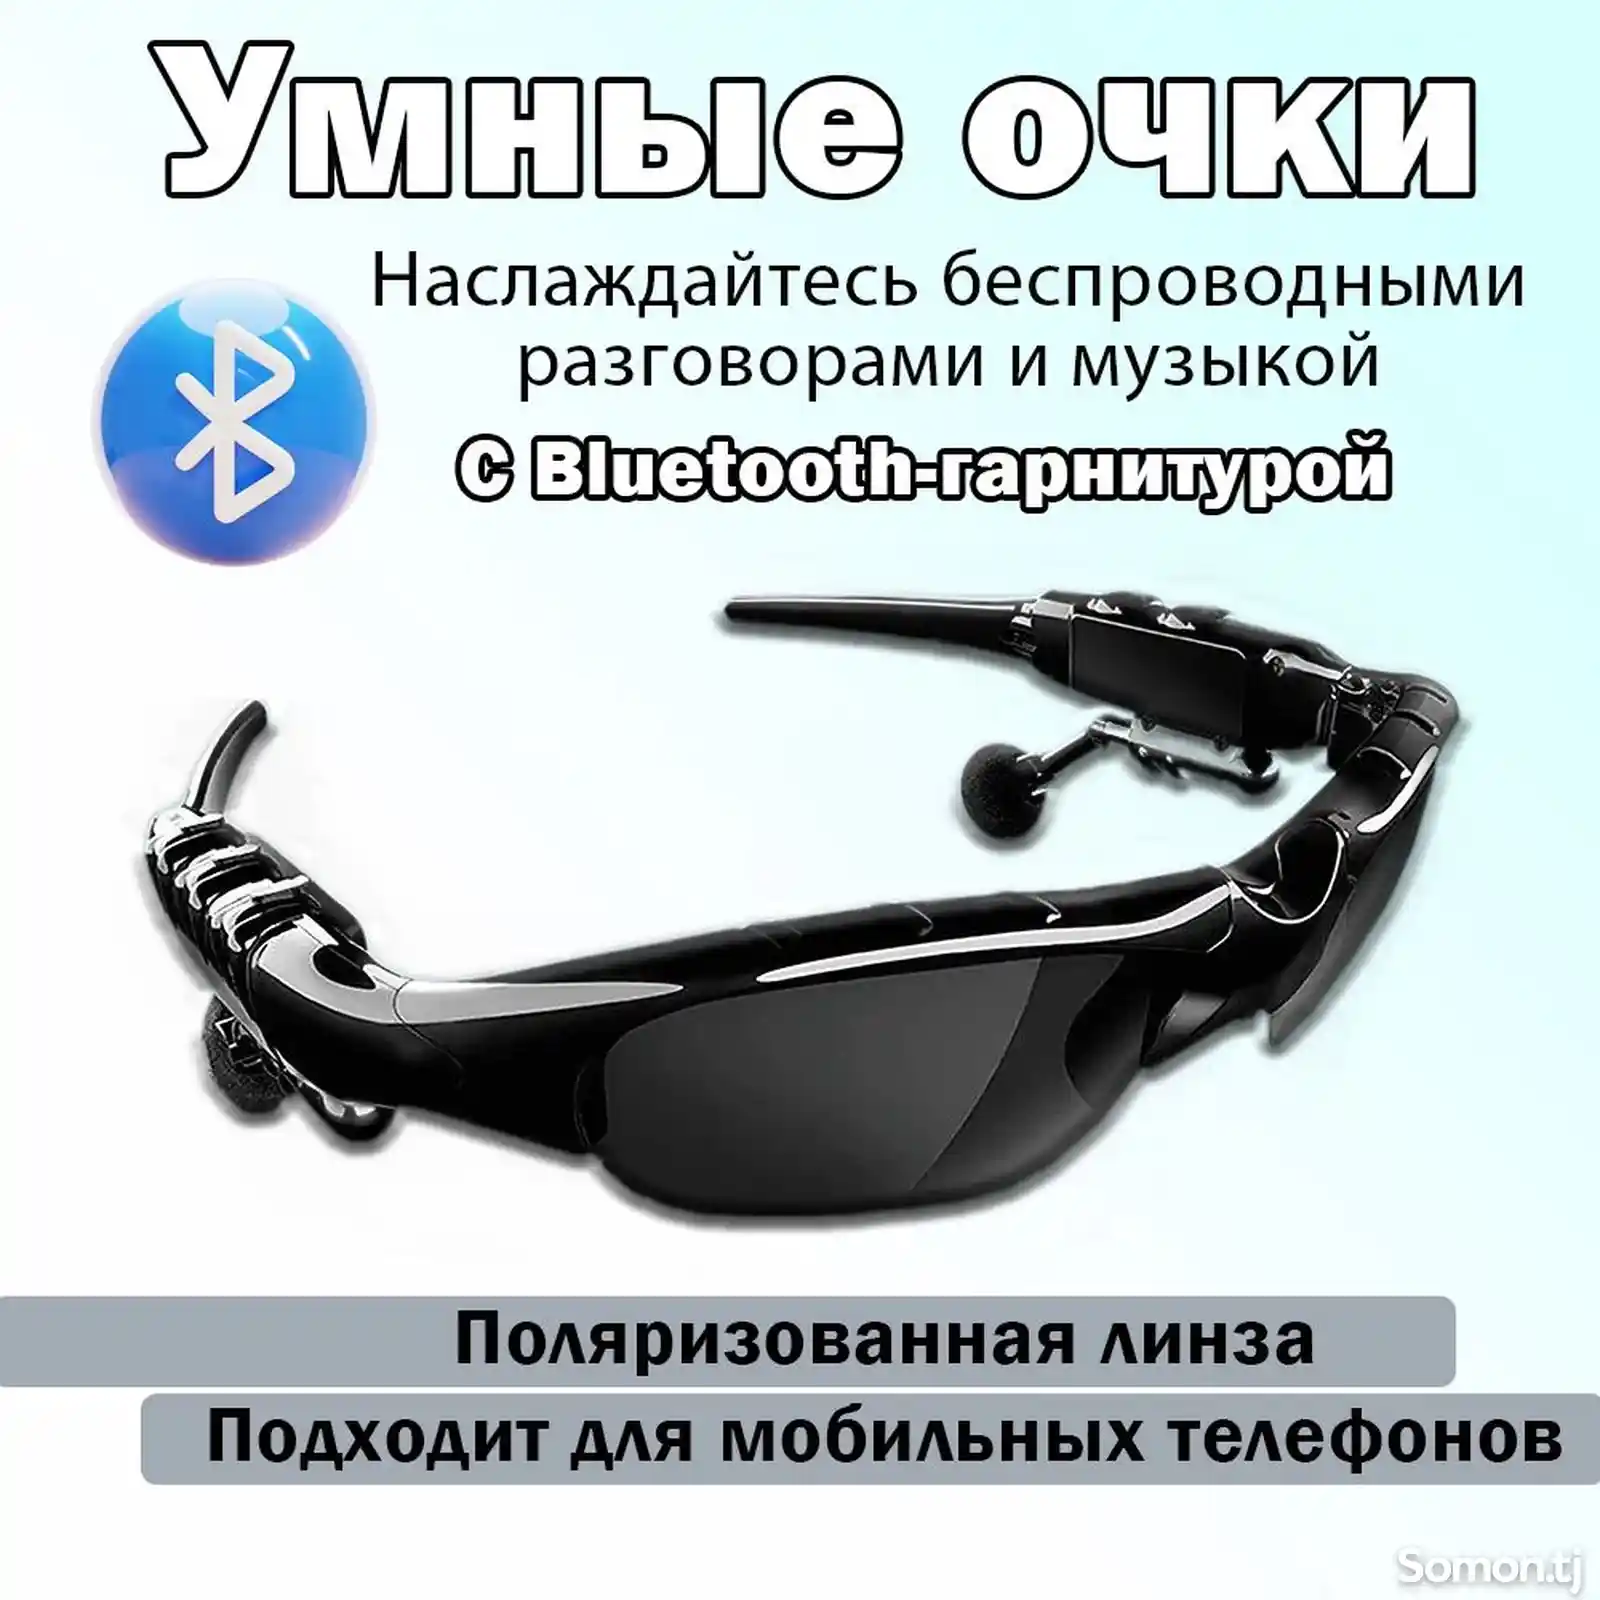 Умные очки с Bluetooth гарнитурой-2